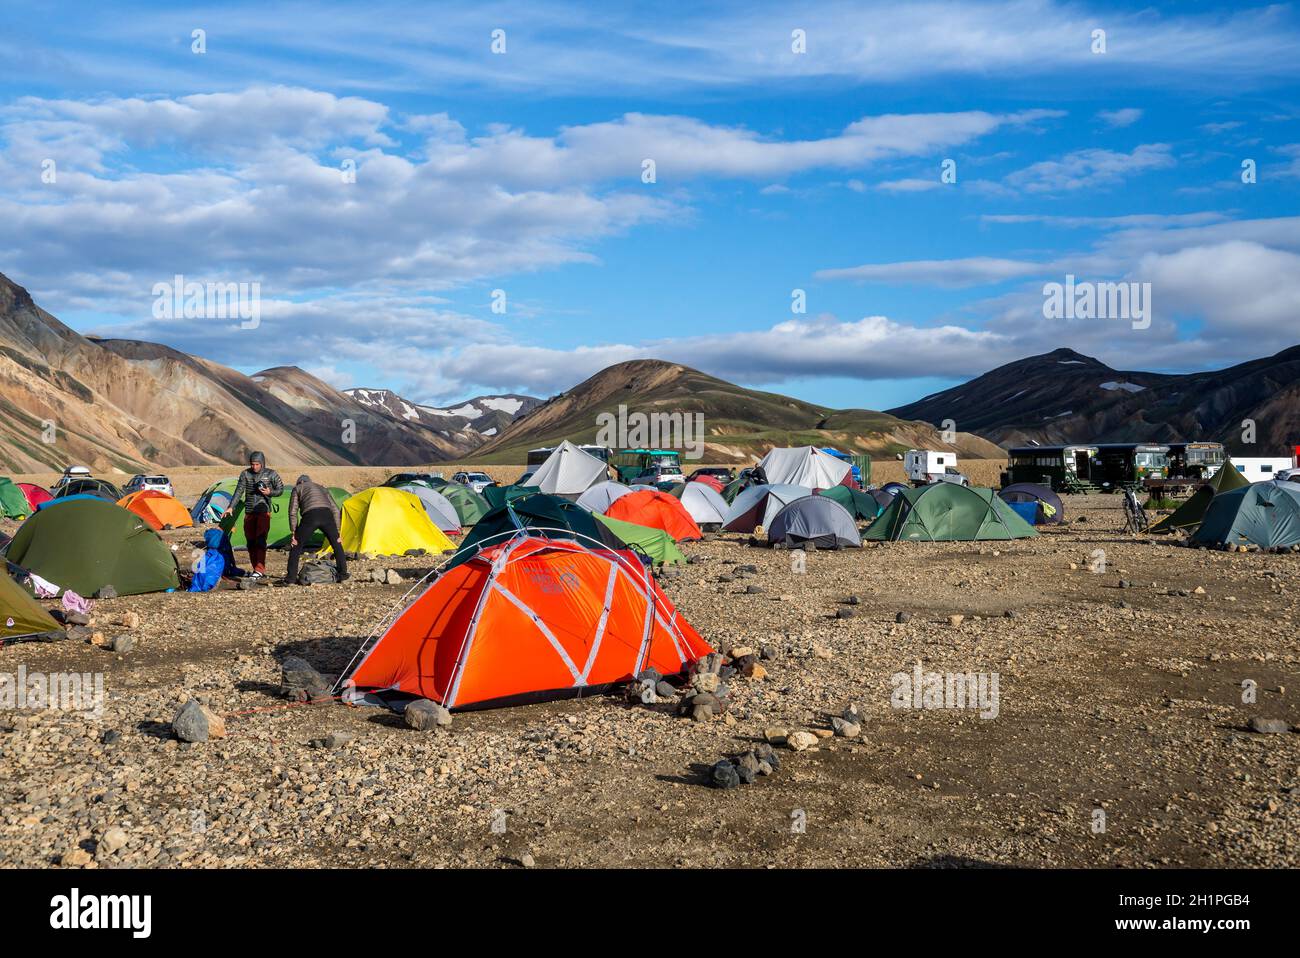 Landmannalaugar, Islande - 30 juillet 2017 : camp de tourisme dans les montagnes volcaniques de Landmannalaugar dans la réserve naturelle de Fjallabak. Islande Banque D'Images